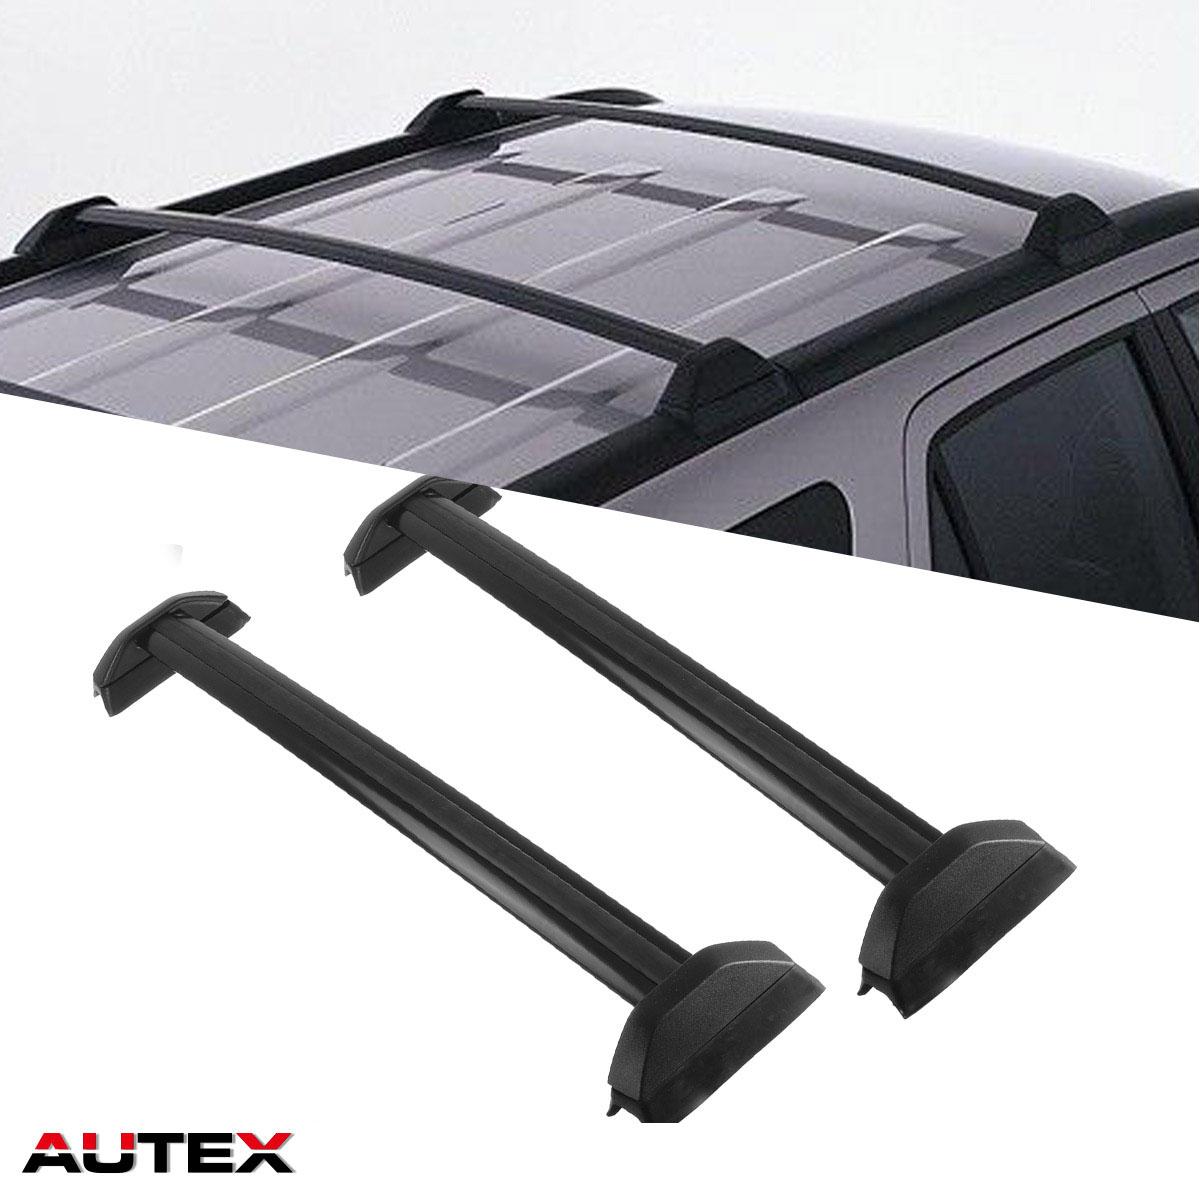 AUTEX 2Pcs Aluminum Cross Bar Roof Rack Compatible with 2002 2003 2004 2005 2006 Honda CRV Roof 2005 Dodge Durango Roof Rack Cross Bars